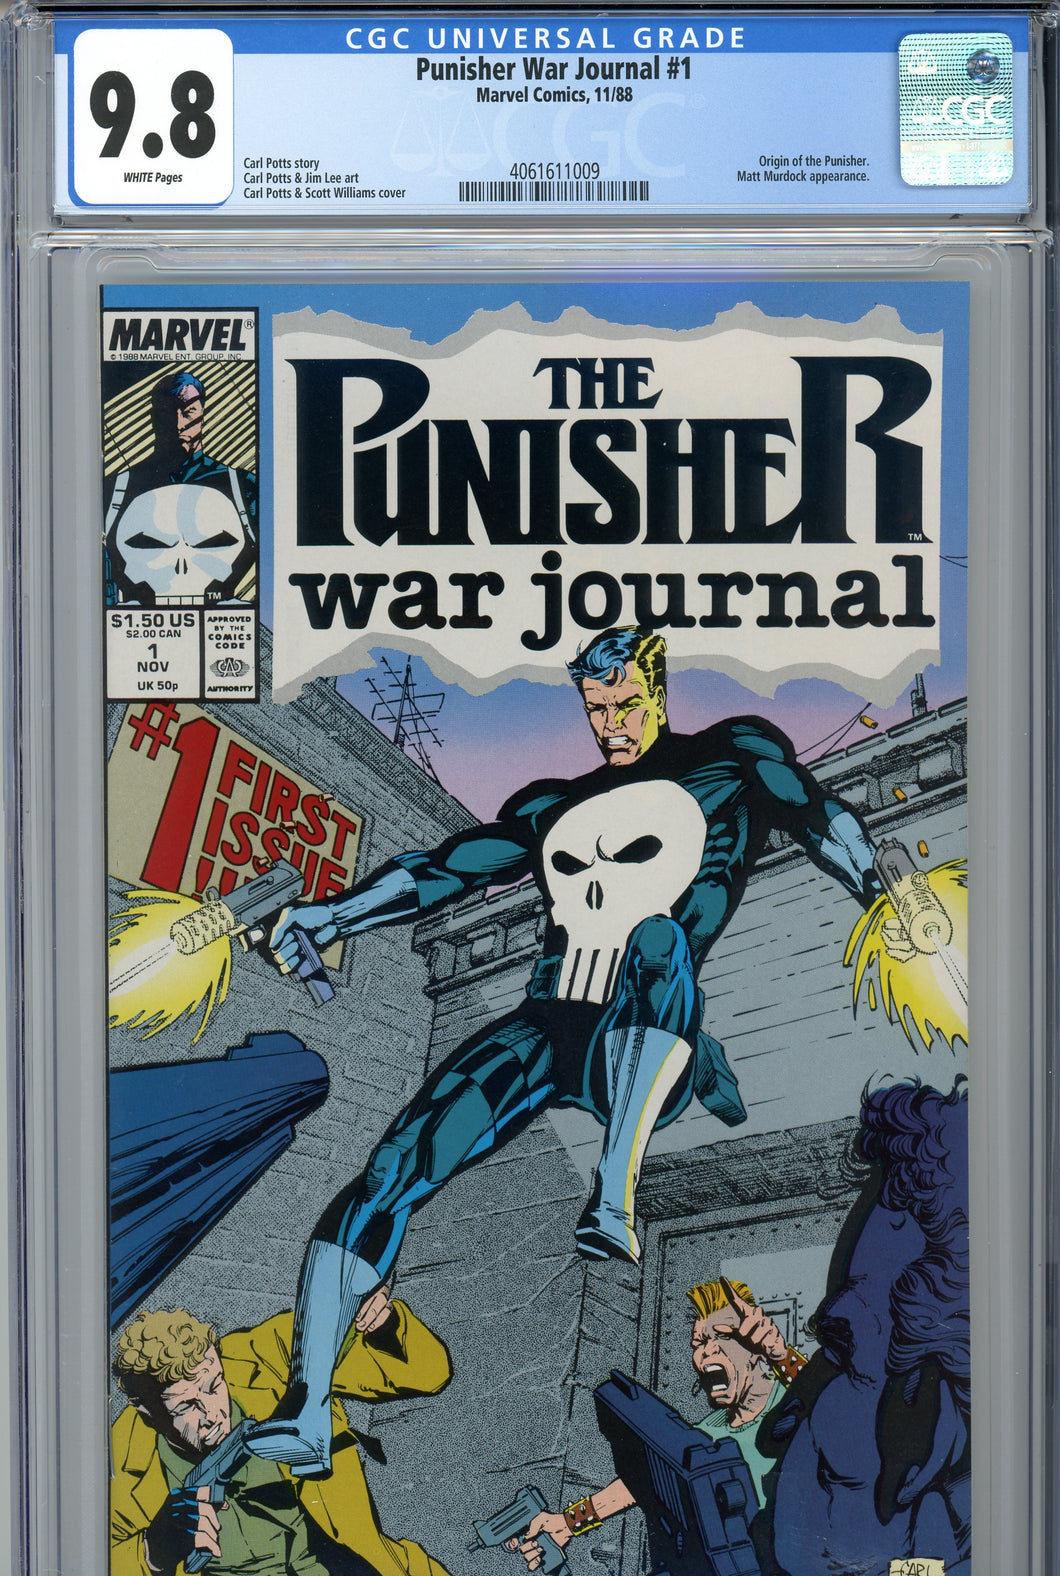 Punisher War Journal #1 CGC 9.8